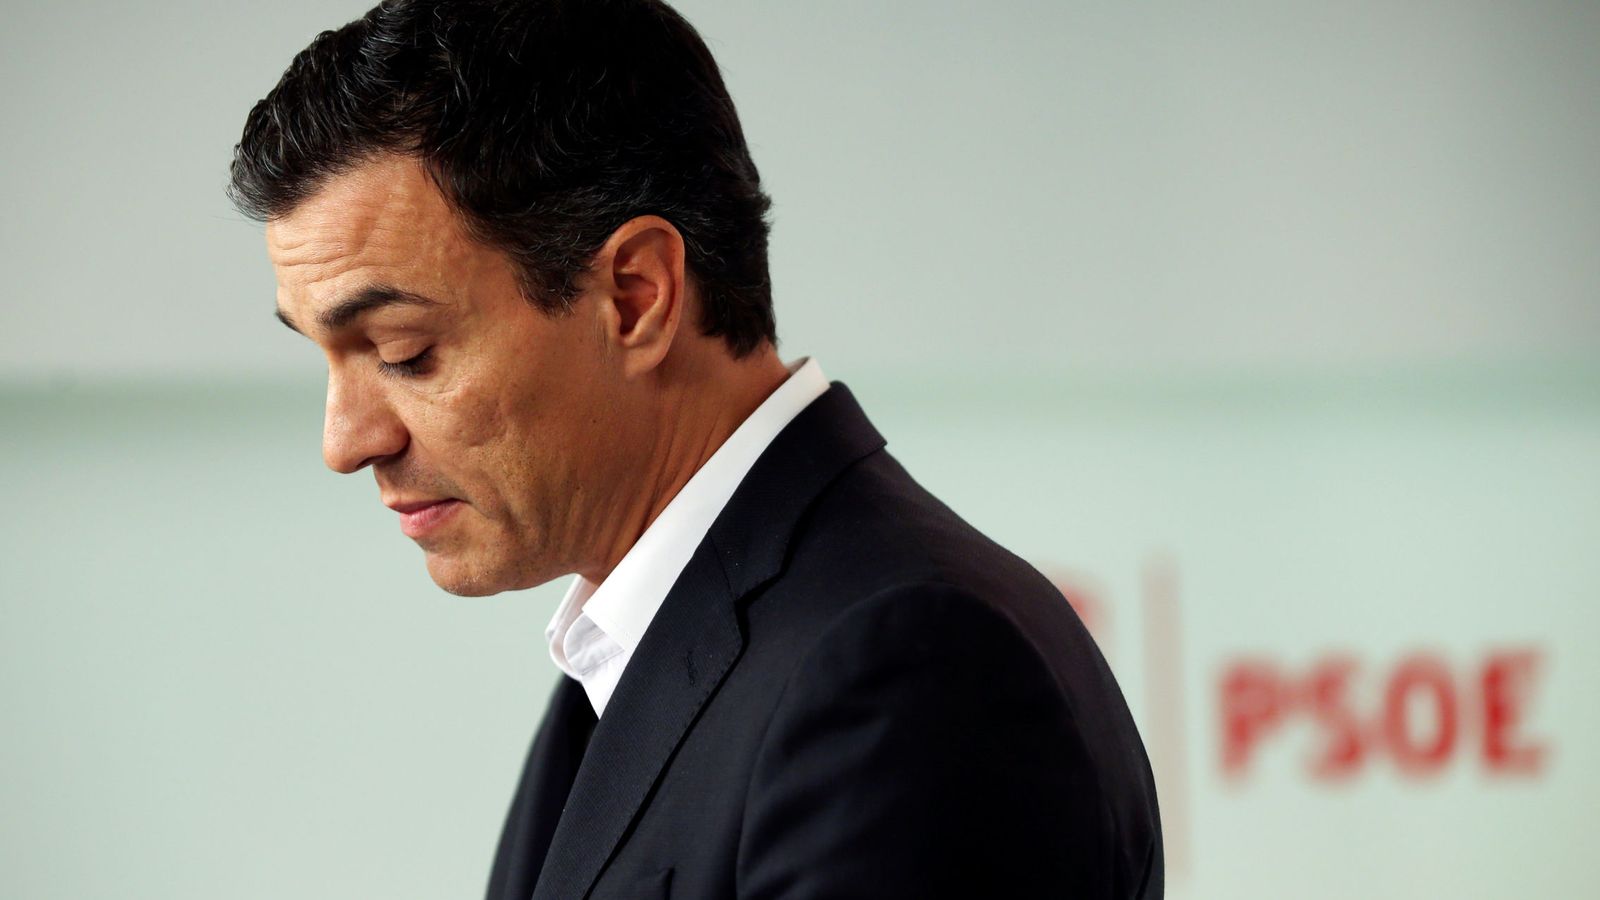 Foto: Pedro Sánchez, en rueda de prensa en Ferraz tras presentar su dimisión como secretario general del PSOE, el pasado 1 de octubre. (Reuters)